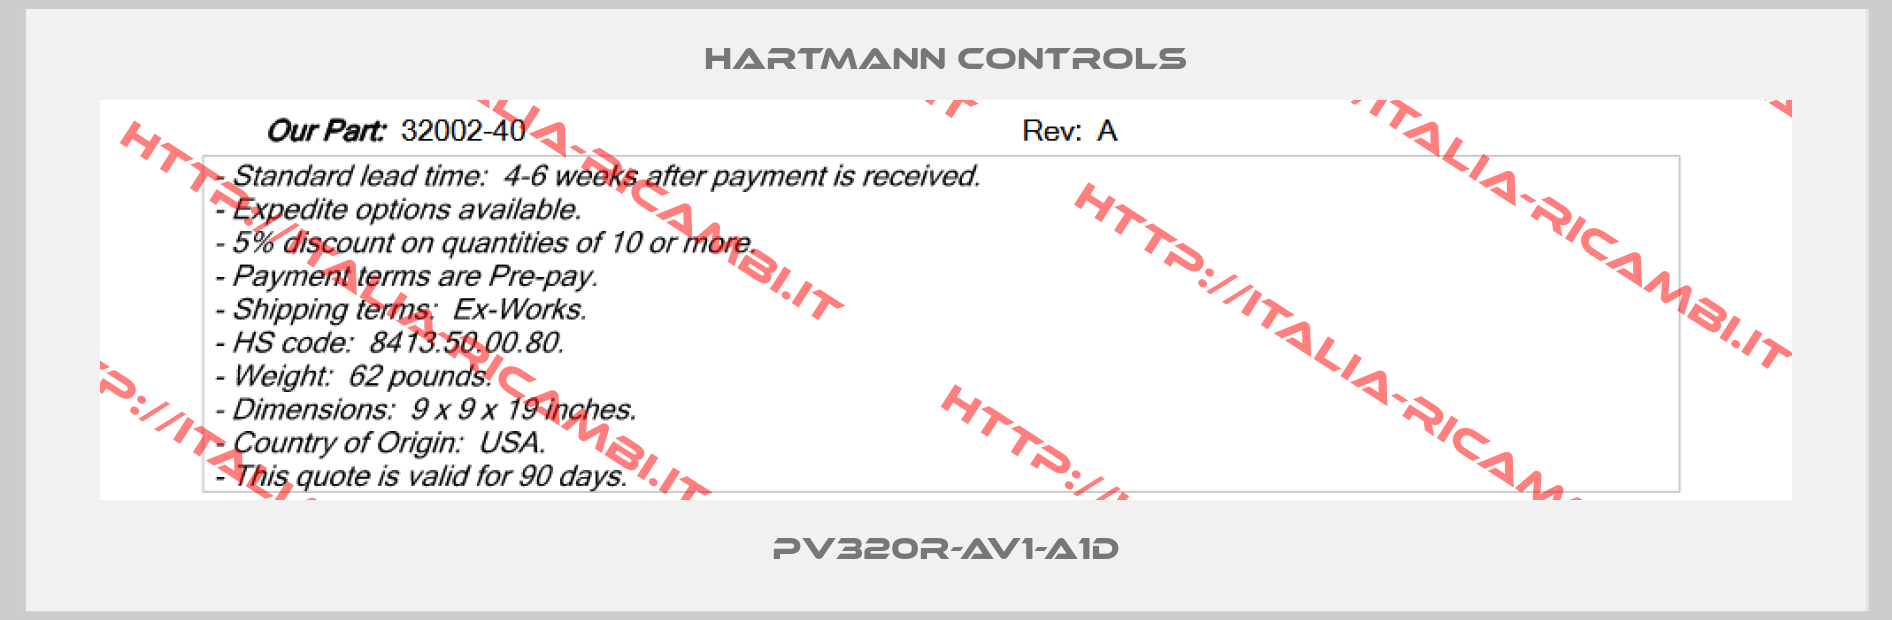 HARTMANN CONTROLS-PV320R-AV1-A1D